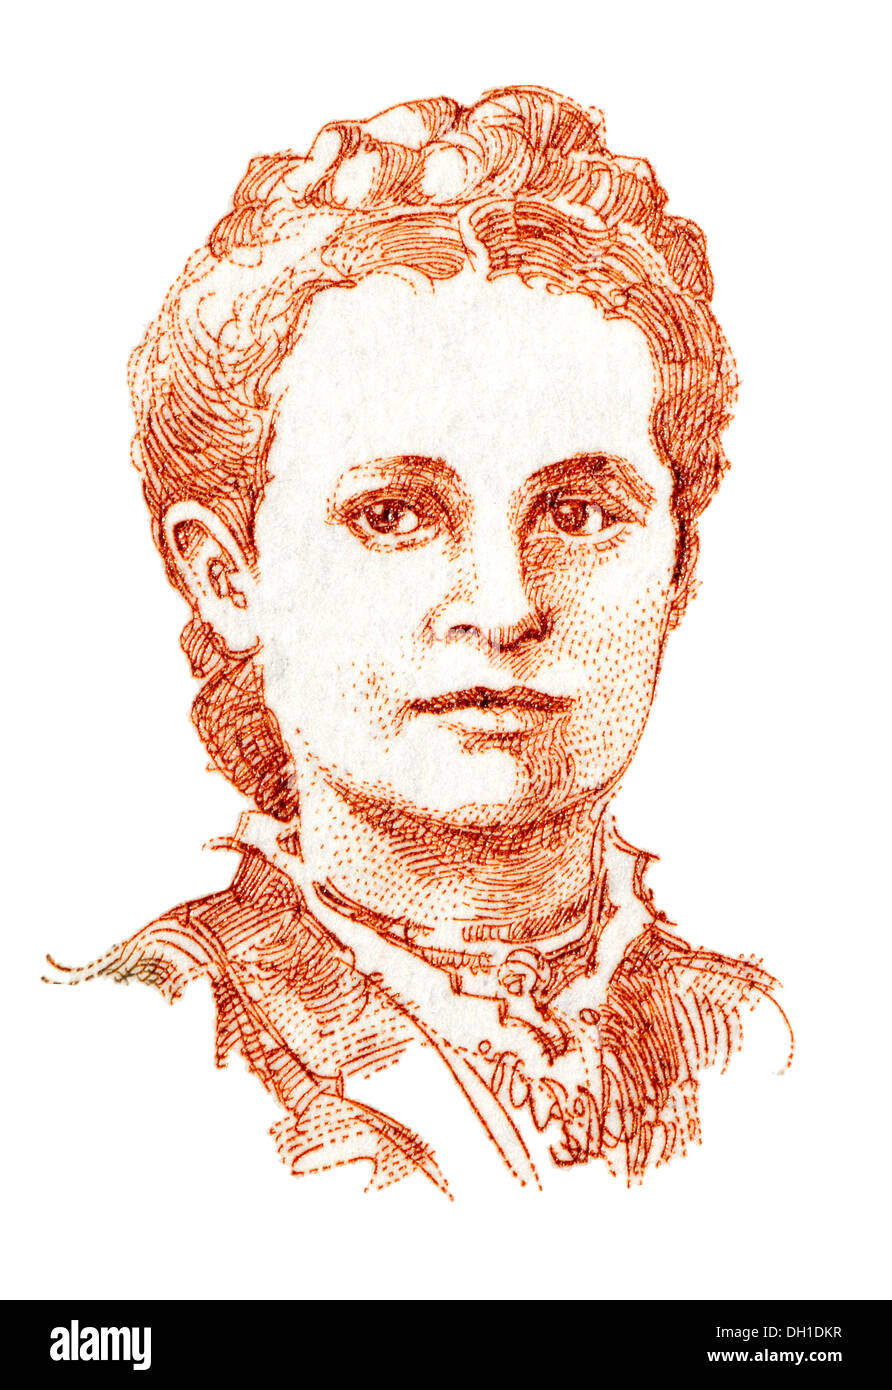 Portrait d'Emma Ihrer (1857-1911 : homme politique allemand et syndicaliste) de timbre-poste allemand. Banque D'Images